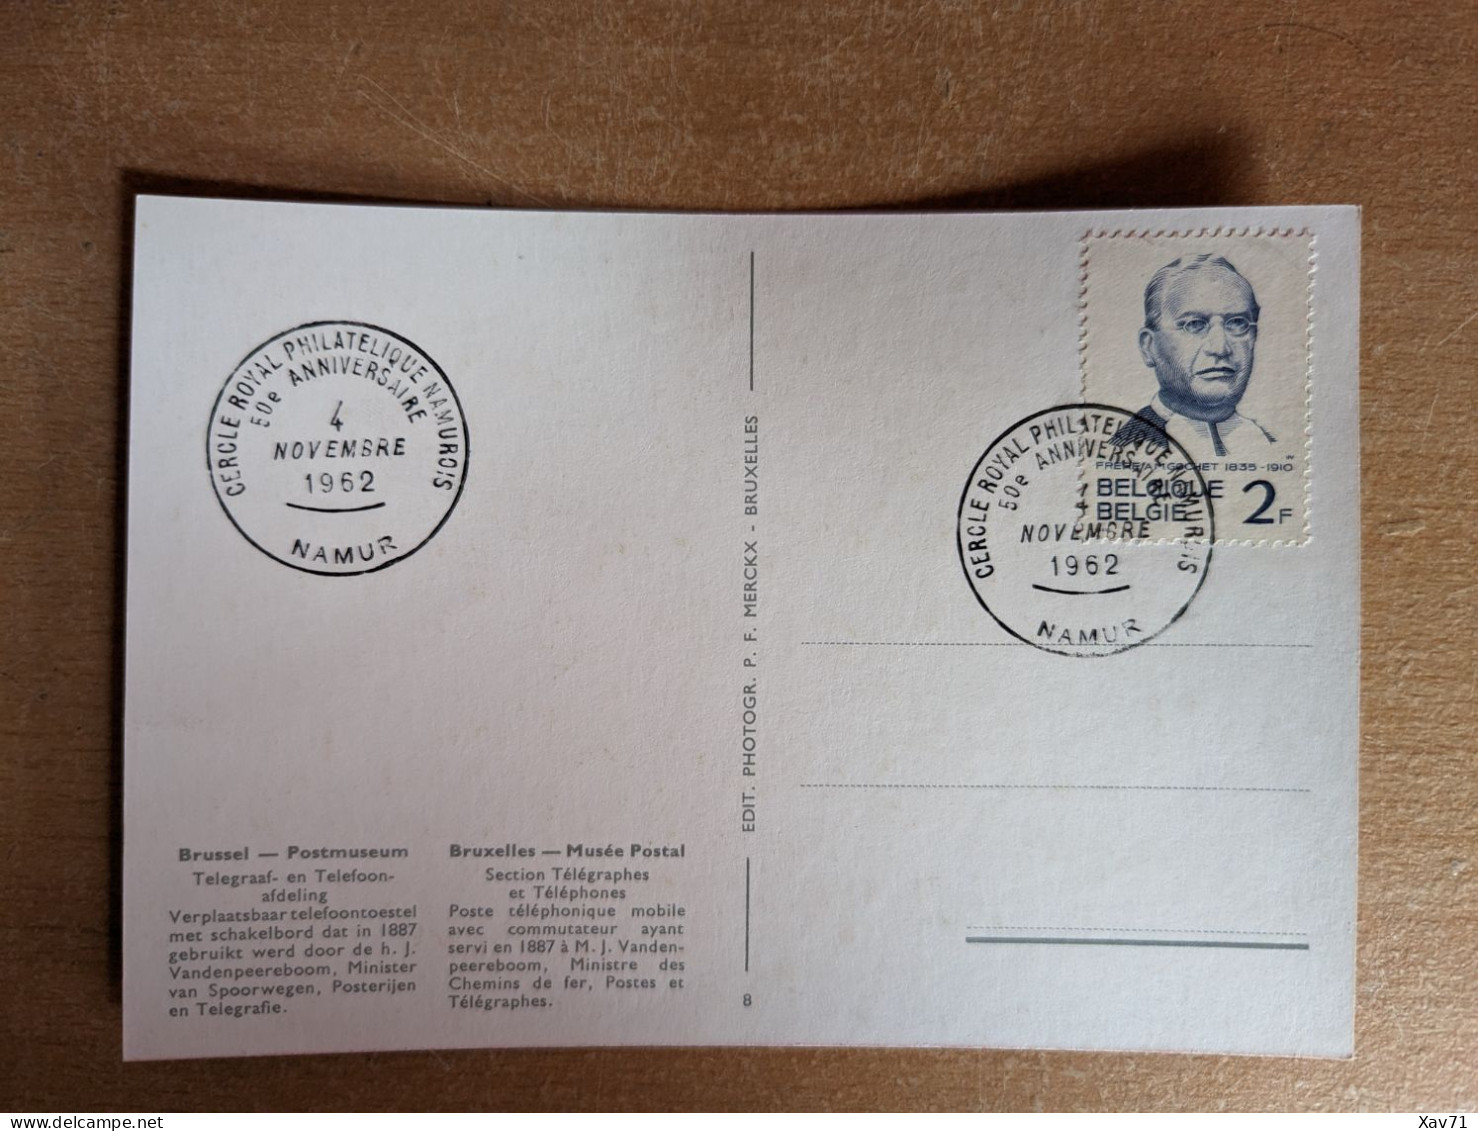 Musee Postal de Bruxelles - set de 8 cartes - ca. 1962